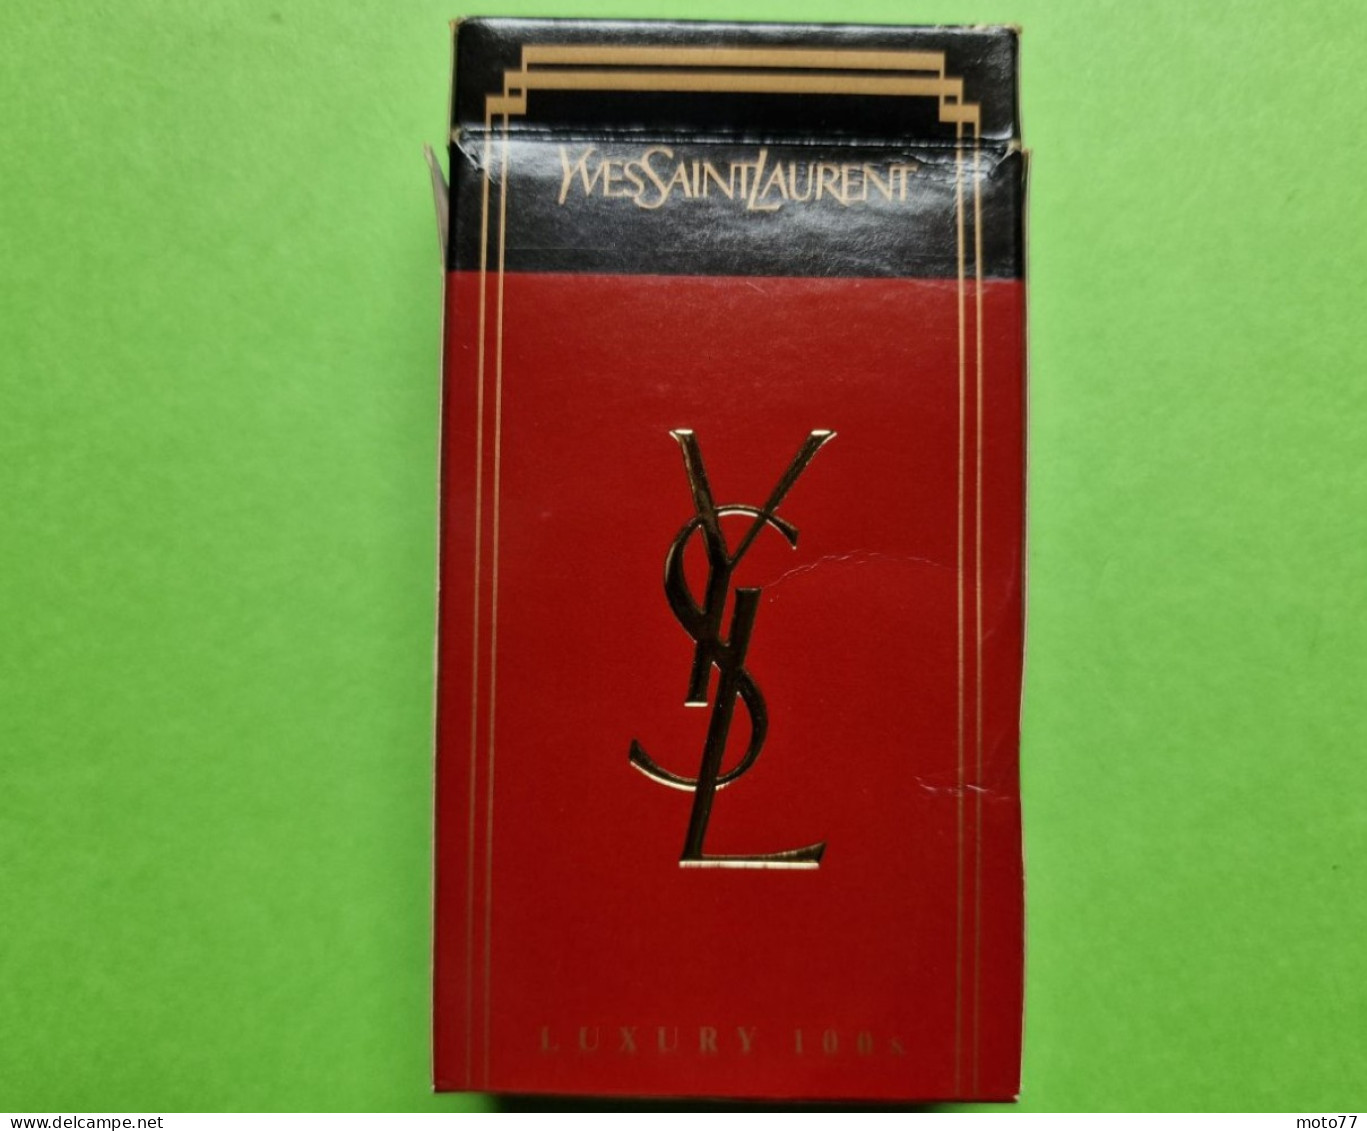 Ancien PAQUET De CIGARETTES Vide - YVES SAINT LAURENT - Vers 1980 - Etuis à Cigarettes Vides